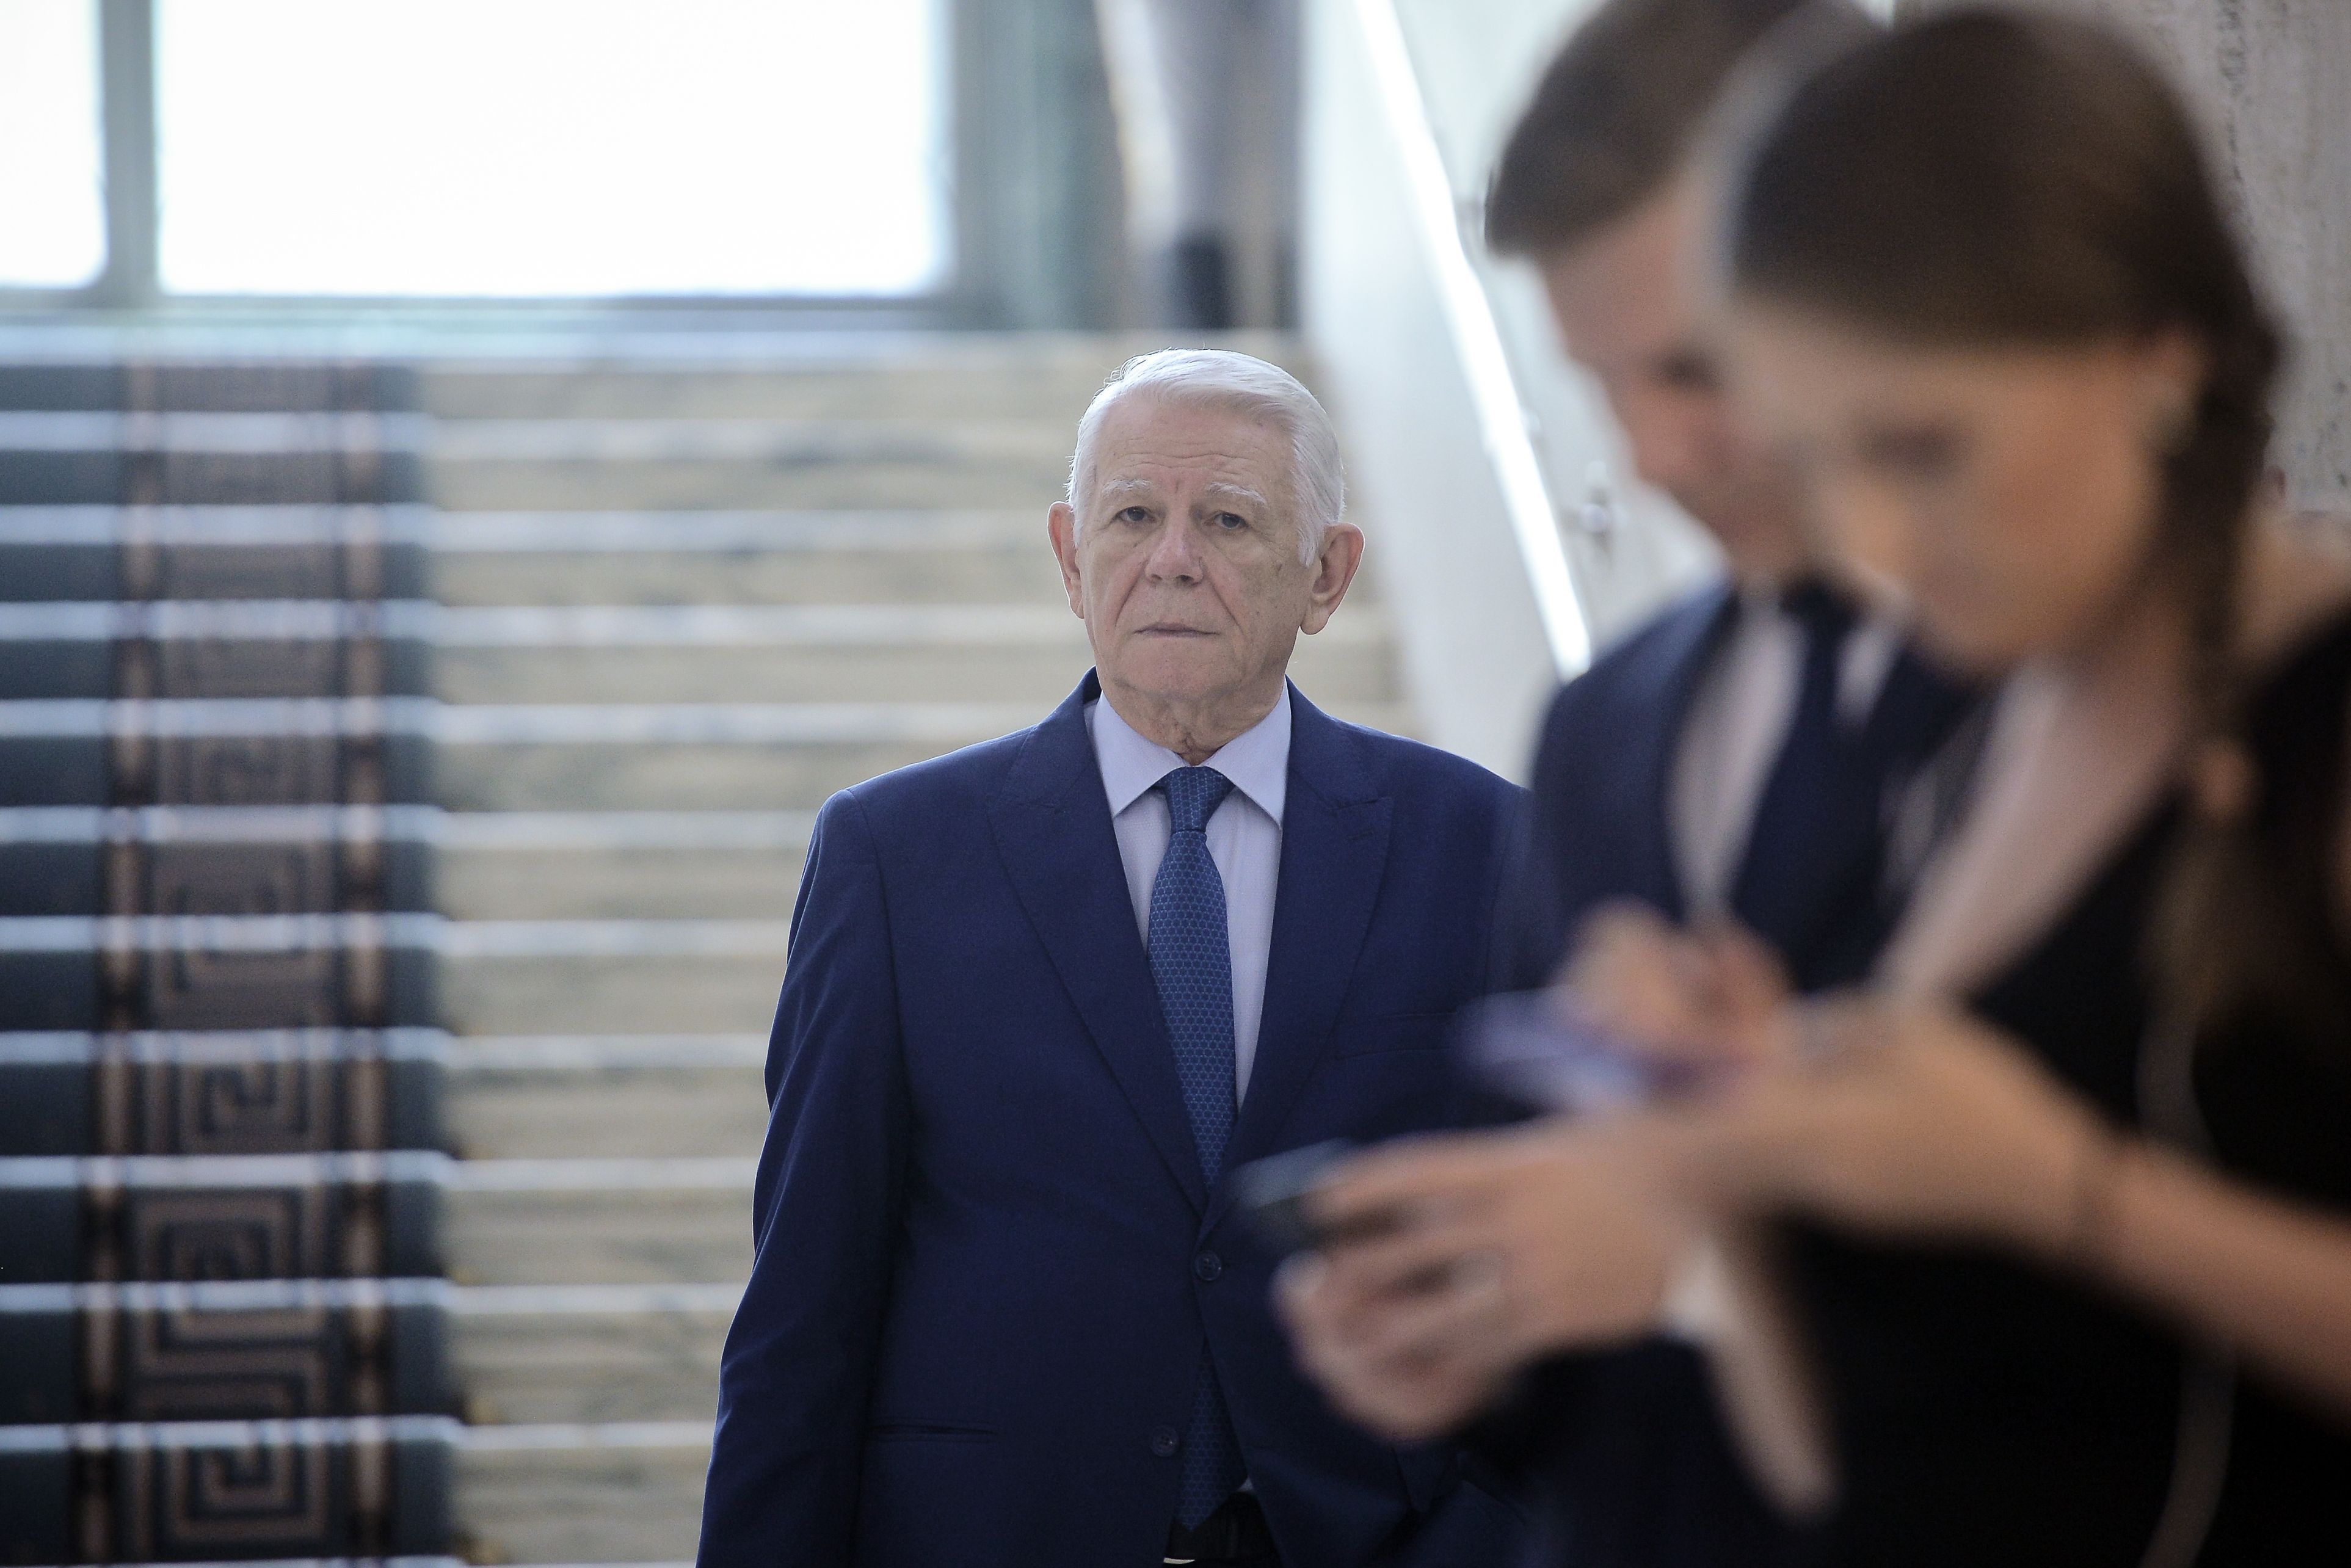 BREAKING. Teodor Meleşcanu a fost ales preşedinte al Senatului. Update: Meleşcanu nu a întrunit numărul necesar de voturi pentru şefia Senatului. Urmează turul al doilea